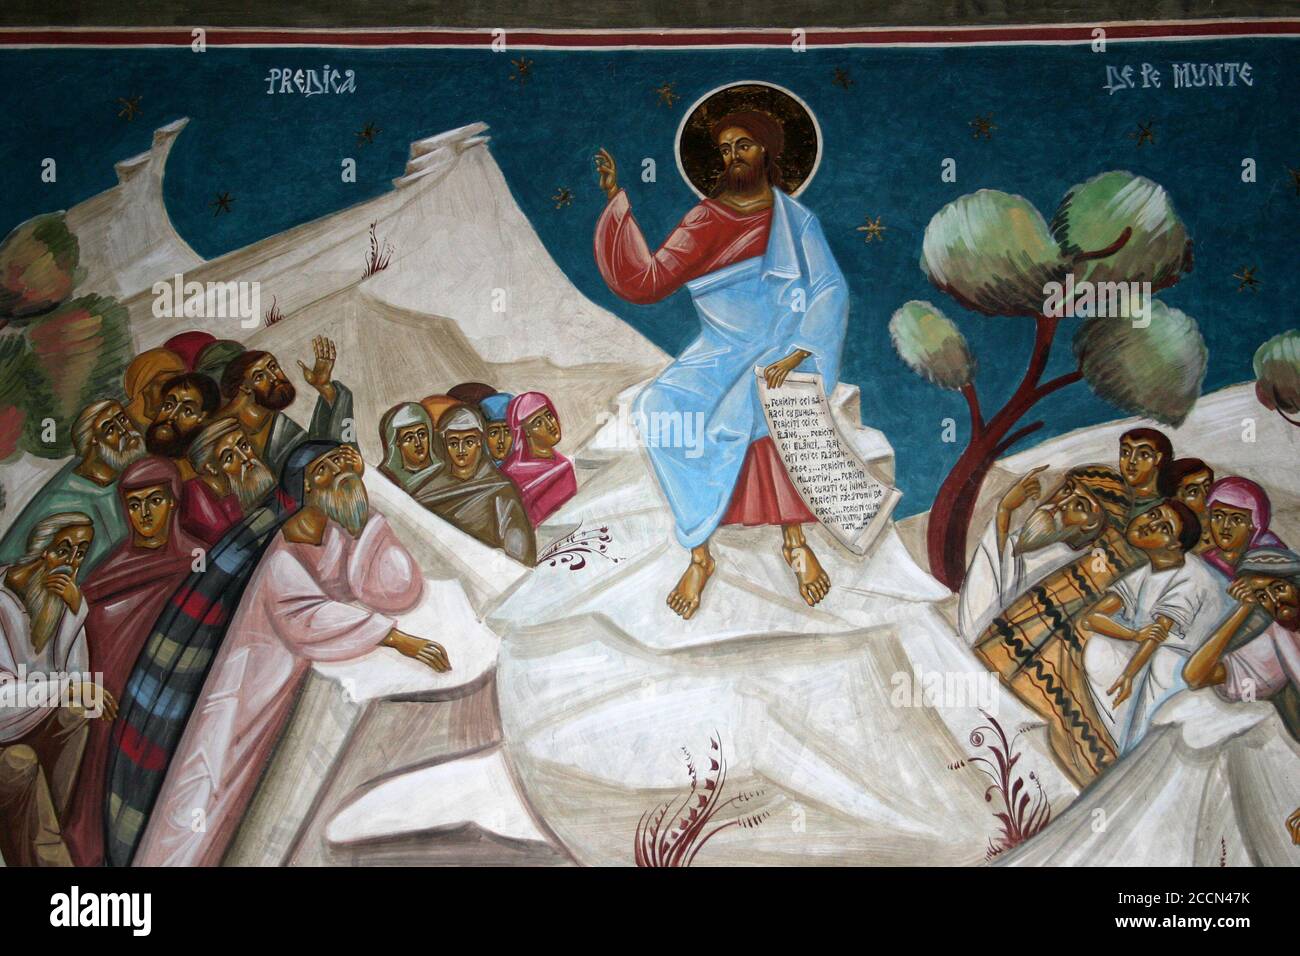 Monastère de Dejani, Roumanie. Fresque représentant le Sermon sur le Mont, scène du Nouveau Testament de la Bible. Banque D'Images